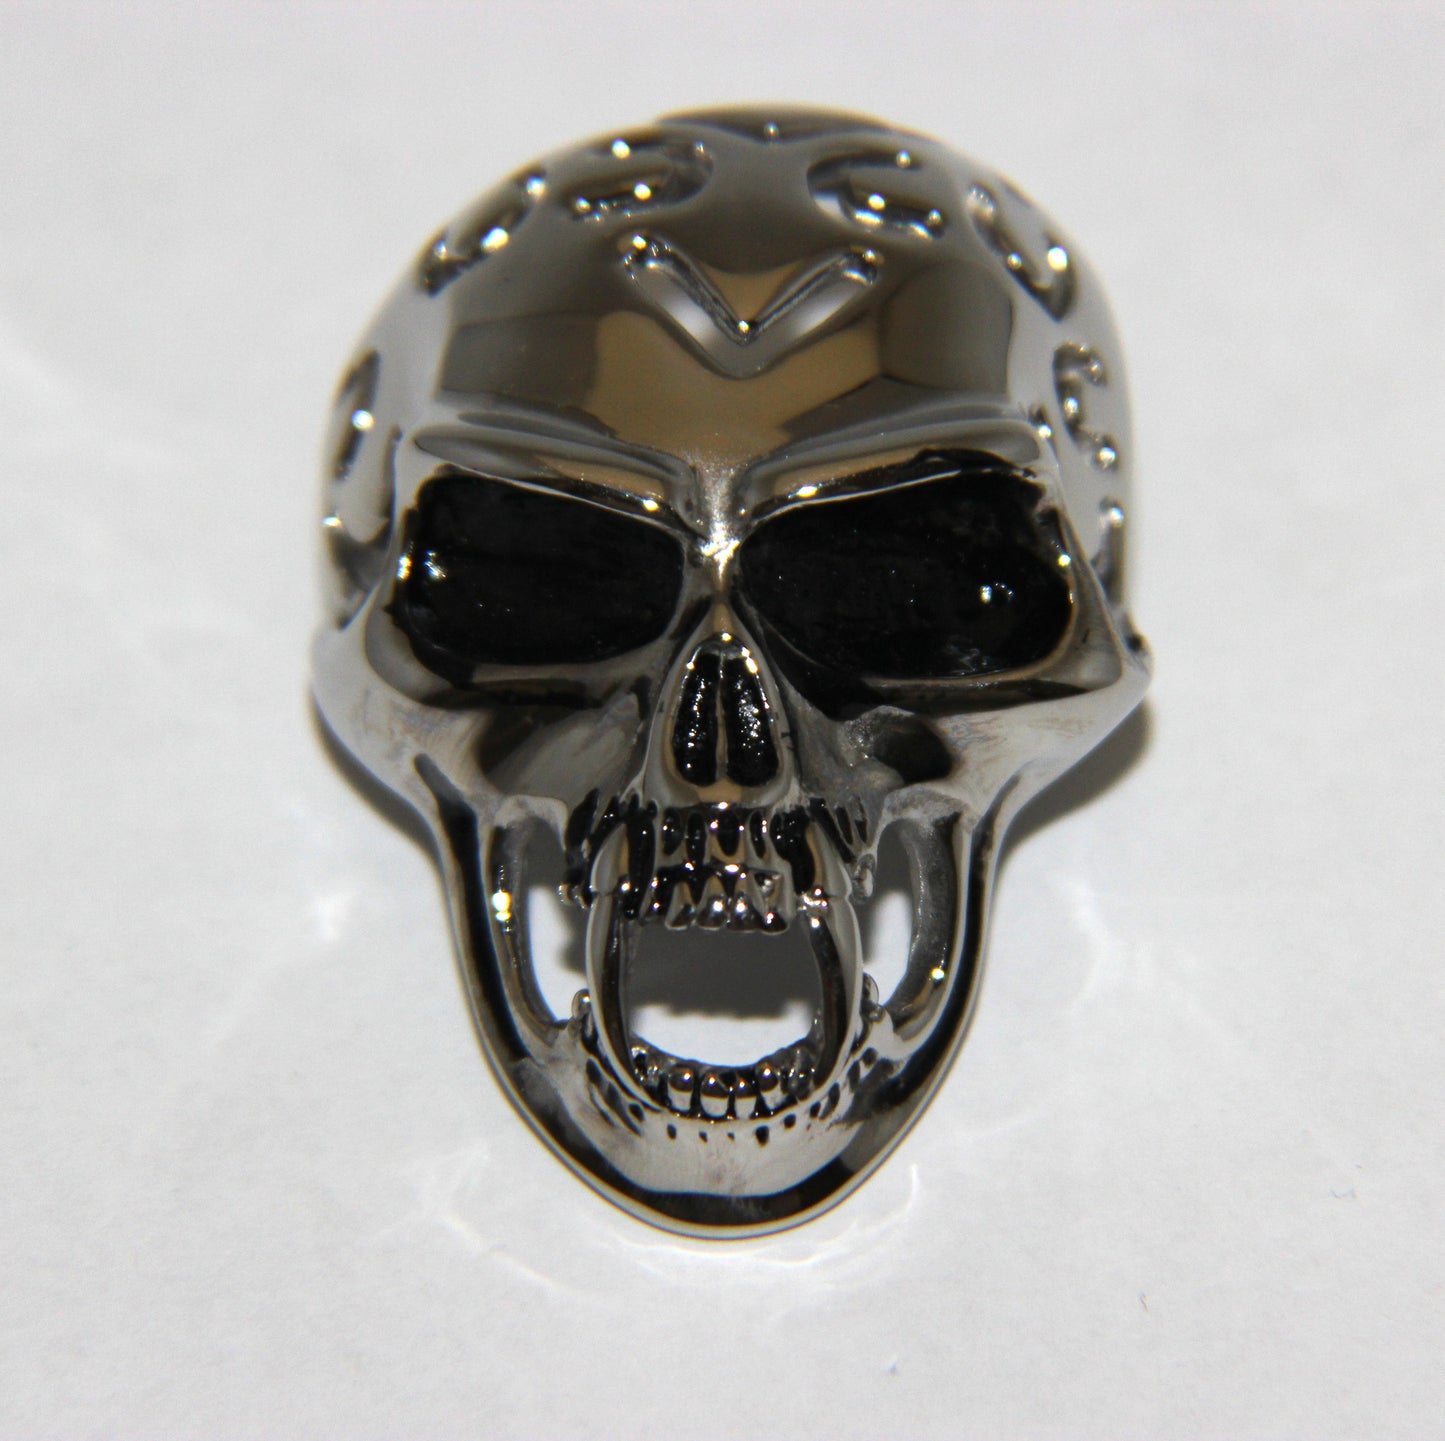 Stainless Steel Vampire Skull Pendant - UDINC0469